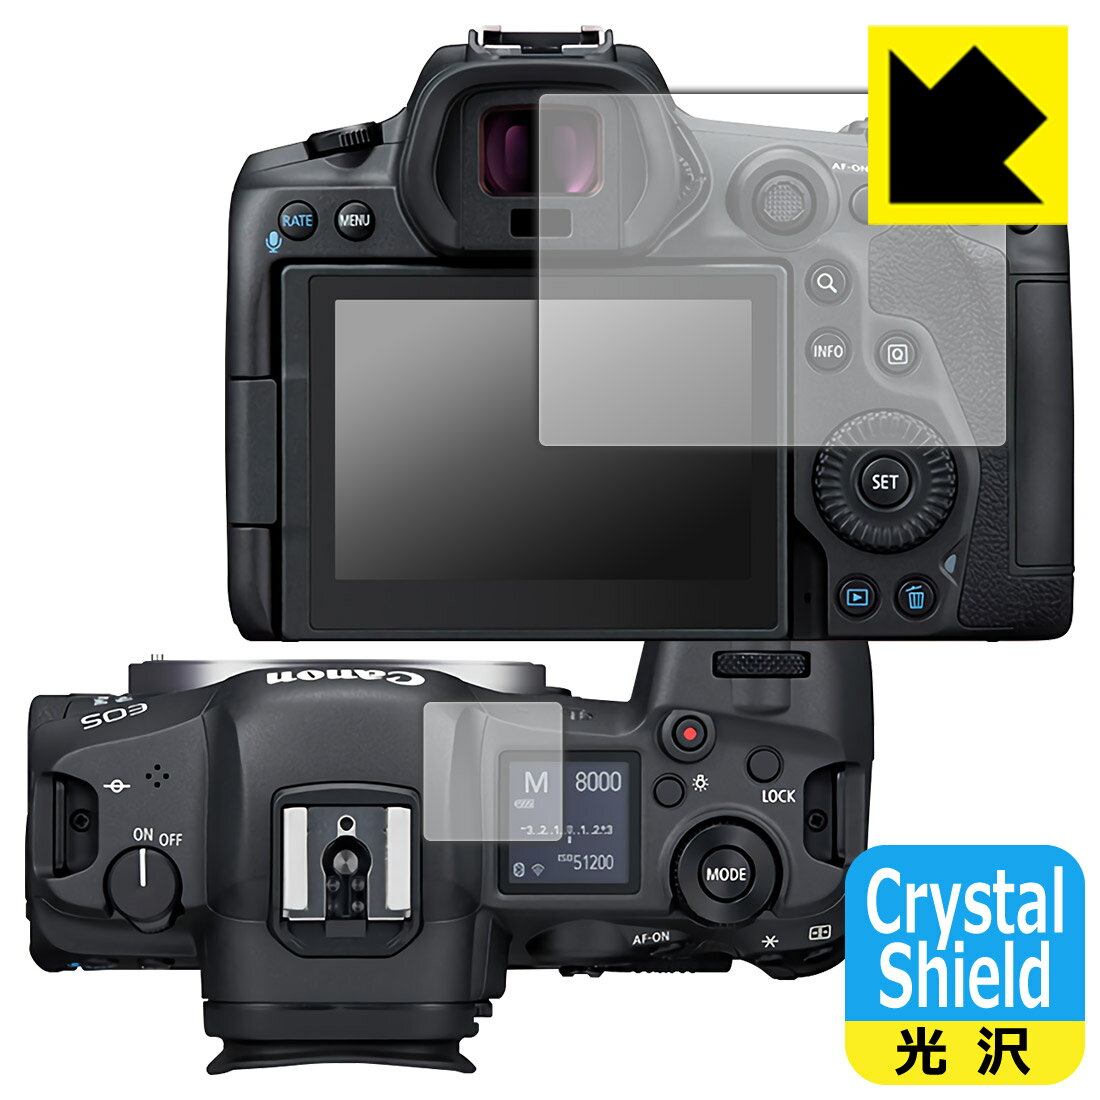 ●対応機種 : Canon ミラーレスカメラ EOS R5●セット内容 : メイン画面用3枚・サブ画面用3枚●「Crystal Shield」は高い透明度と光沢感で、保護フィルムを貼っていないかのようなクリア感のある『光沢タイプの保護フィルム』●安心の国産素材を使用。日本国内の自社工場で製造し出荷しています。【ポスト投函送料無料】商品は【ポスト投函発送 (追跡可能メール便)】で発送します。お急ぎ、配達日時を指定されたい方は以下のクーポンを同時購入ください。【お急ぎ便クーポン】　プラス110円(税込)で速達扱いでの発送。お届けはポストへの投函となります。【配達日時指定クーポン】　プラス550円(税込)で配達日時を指定し、宅配便で発送させていただきます。【お急ぎ便クーポン】はこちらをクリック【配達日時指定クーポン】はこちらをクリック 　 貼っていることを意識させないほどの高い透明度に、高級感あふれる光沢・クリアな仕上げとなります。 動画視聴や画像編集など、機器本来の発色を重視したい方におすすめです。 ハードコート加工がされており、キズや擦れに強くなっています。簡単にキズがつかず長くご利用いただけます。 表面はフッ素コーティングがされており、皮脂や汚れがつきにくく、また、落ちやすくなっています。 指滑りもなめらかで、快適な使用感です。 油性マジックのインクもはじきますので簡単に拭き取れます。 接着面は気泡の入りにくい特殊な自己吸着タイプです。素材に柔軟性があり、貼り付け作業も簡単にできます。また、はがすときにガラス製フィルムのように割れてしまうことはありません。 貼り直しが何度でもできるので、正しい位置へ貼り付けられるまでやり直すことができます。 抗菌加工によりフィルム表面の菌の繁殖を抑えることができます。清潔な画面を保ちたい方におすすめです。 ※抗菌率99.9％ / JIS Z2801 抗菌性試験方法による評価 最高級グレードの国産素材を日本国内の弊社工場で加工している完全な Made in Japan です。安心の品質をお届けします。 使用上の注意 ●本製品は機器の画面をキズなどから保護するフィルムです。他の目的にはご使用にならないでください。 ●本製品は液晶保護および機器本体を完全に保護することを保証するものではありません。機器の破損、損傷、故障、その他損害につきましては一切の責任を負いかねます。 ●製品の性質上、画面操作の反応が変化したり、表示等が変化して見える場合がございます。 ●貼り付け作業時の失敗(位置ズレ、汚れ、ゆがみ、折れ、気泡など)および取り外し作業時の破損、損傷などについては、一切の責任を負いかねます。 ●水に濡れた状態でのご使用は吸着力の低下などにより、保護フィルムがはがれてしまう場合がございます。防水対応の機器でご使用の場合はご注意ください。 ●アルコール類やその他薬剤を本製品に付着させないでください。表面のコーティングや吸着面が変質するおそれがあります。 ●品質向上のため、仕様などを予告なく変更する場合がございますので、予めご了承ください。